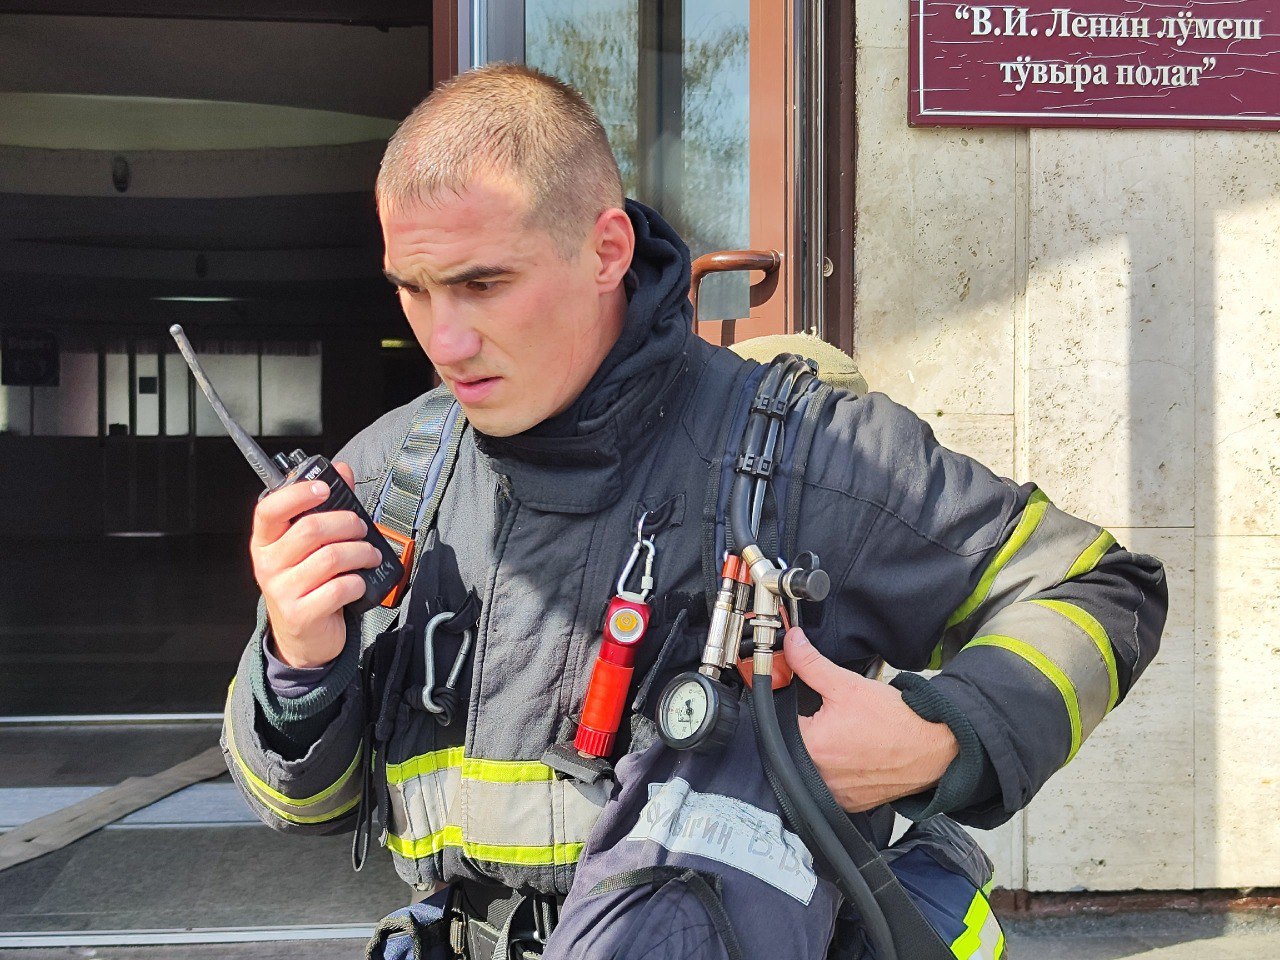 Пожарный из Йошкар-Олы рассказал о страхе и красоте в своей работе: «Плавились рации и каски»